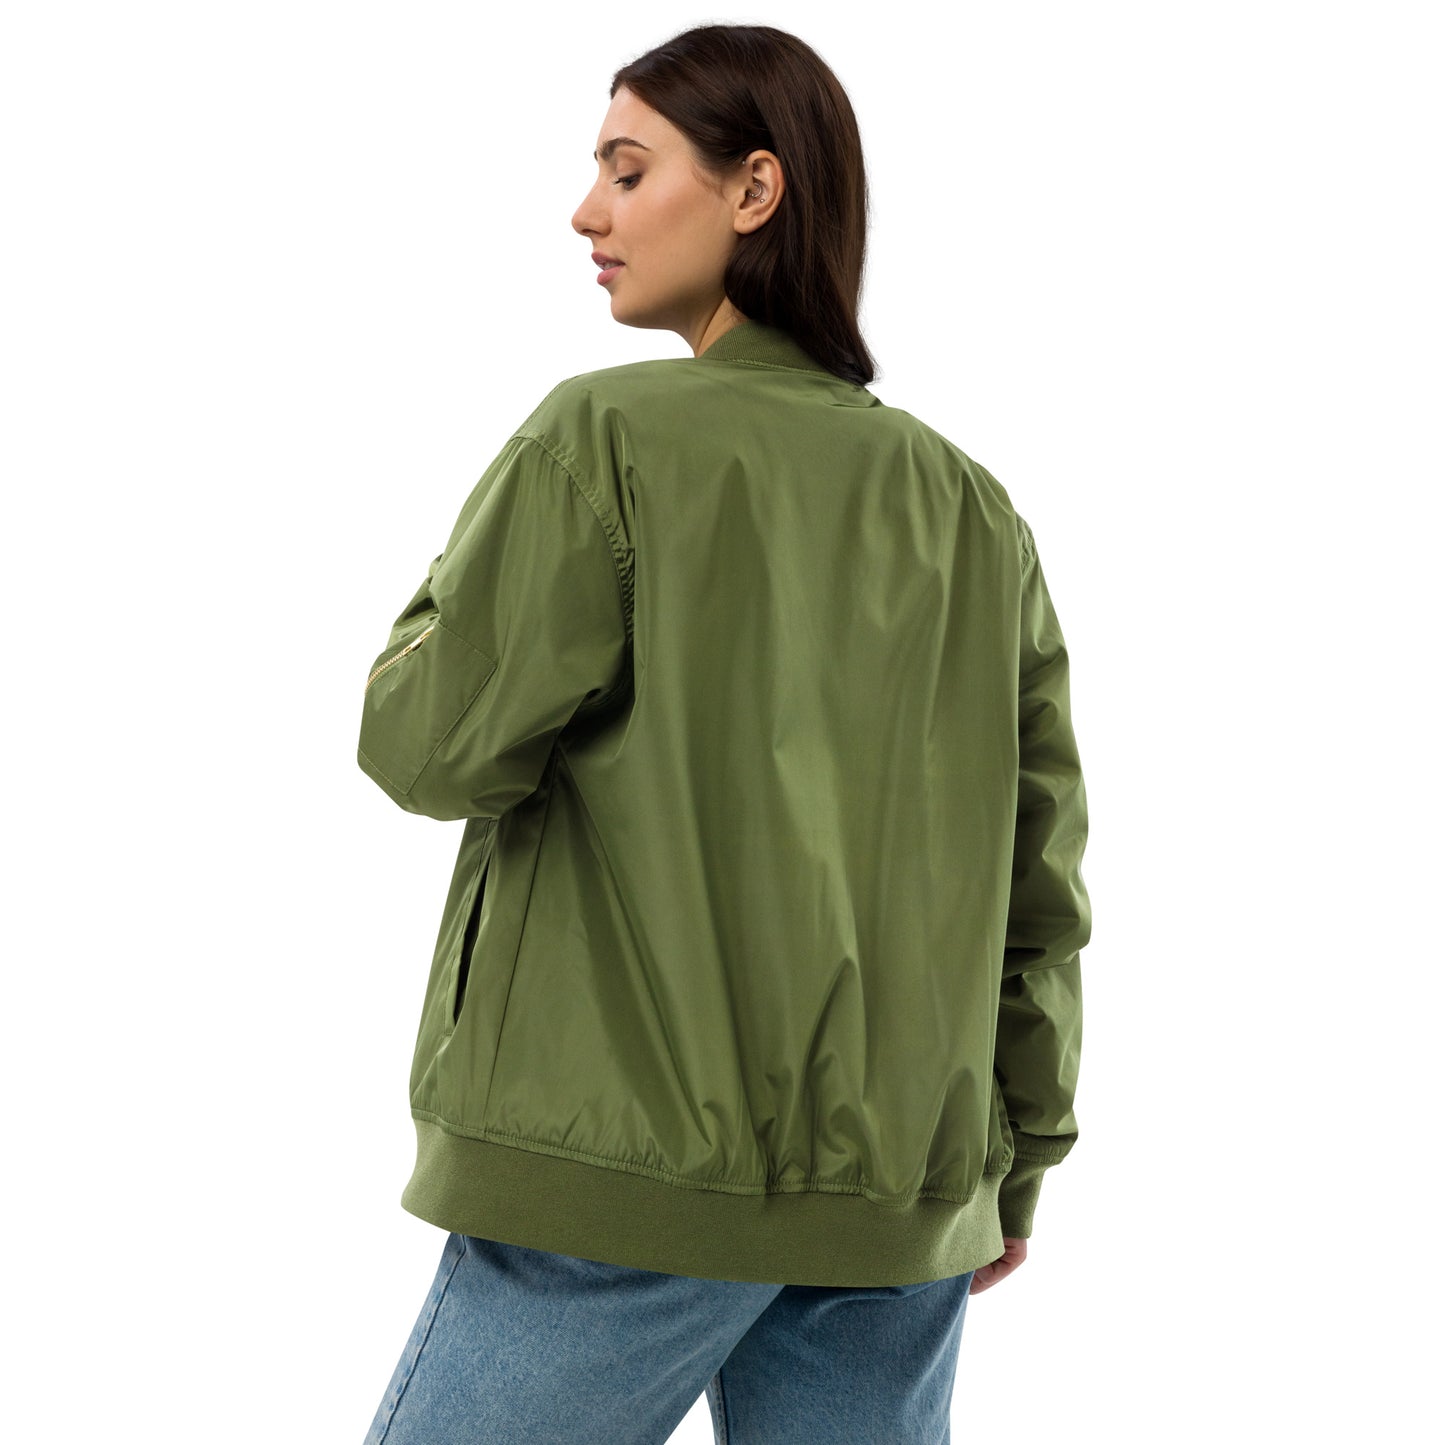 Premium recycled bomber jacket - I'm not short, I'm fun sized